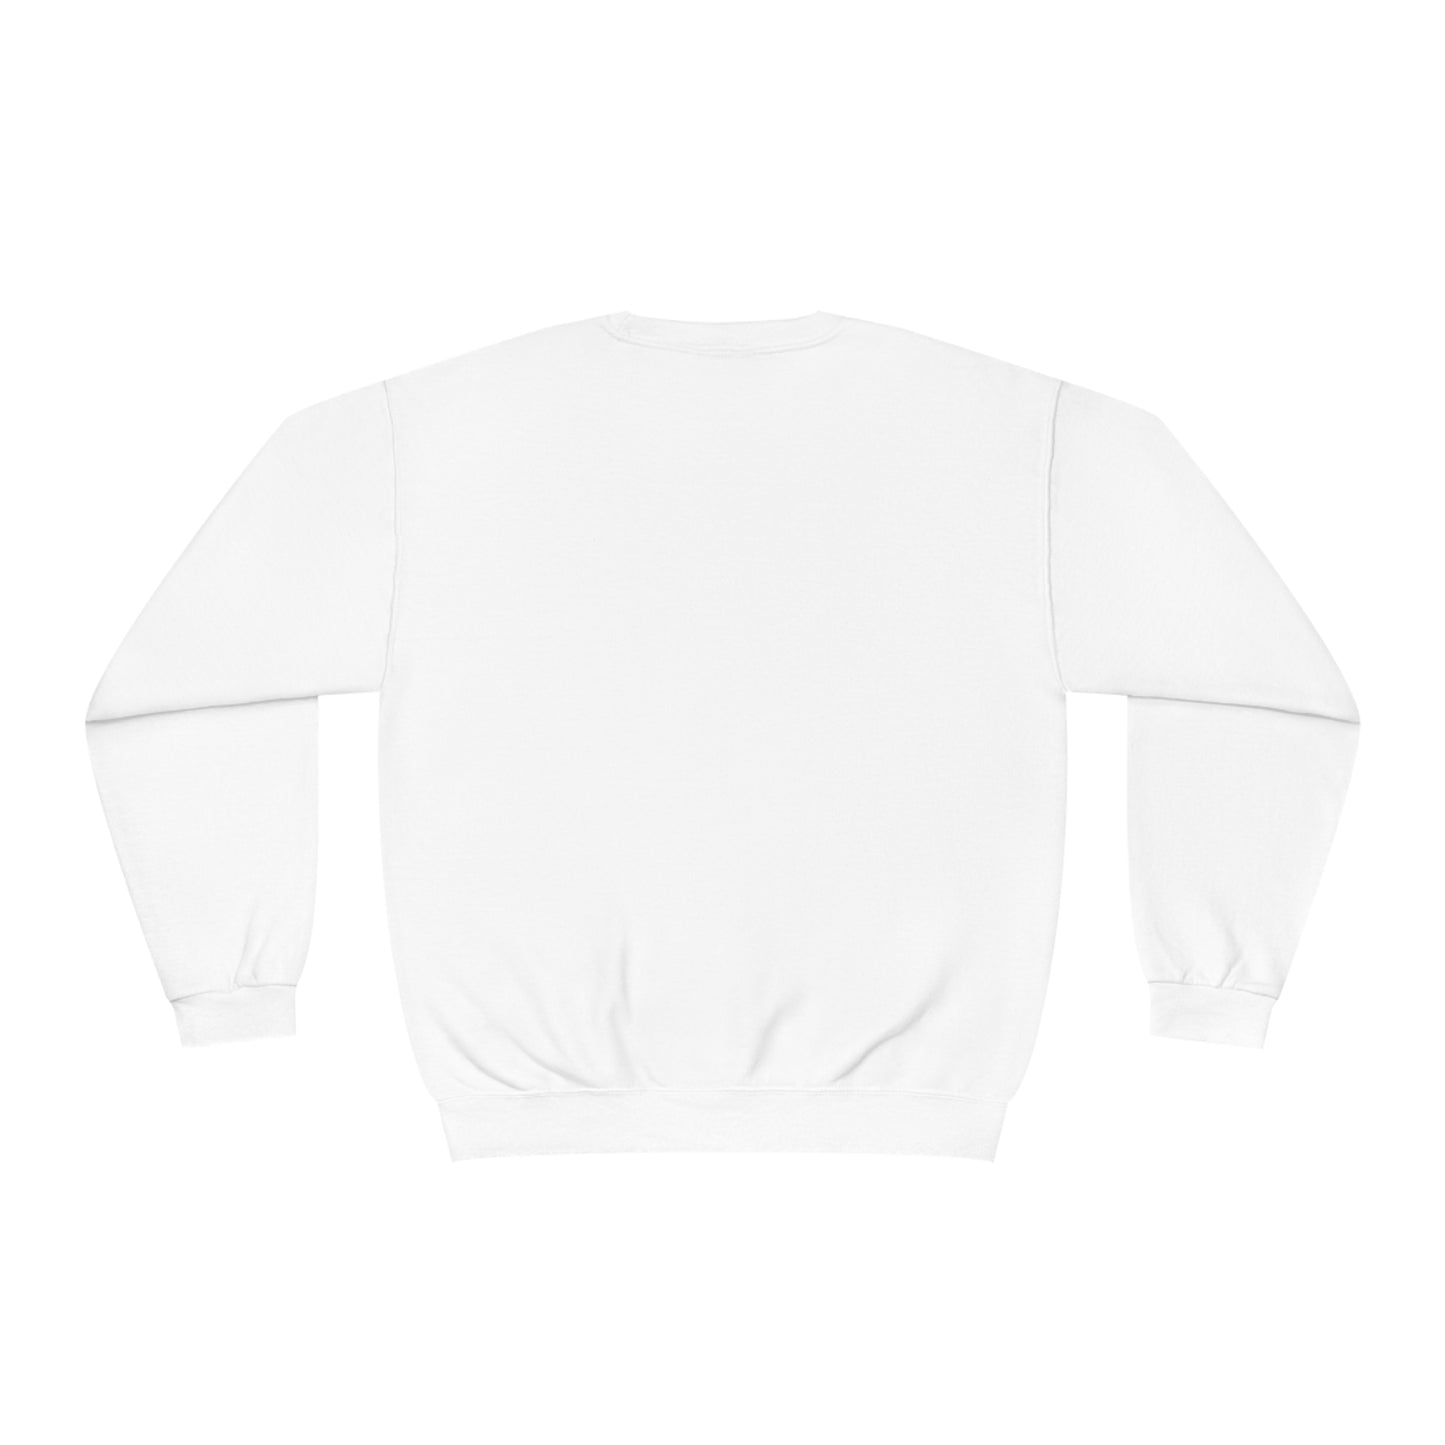 Yes I'm Cold  - Unisex NuBlend® Crewneck Sweatshirt